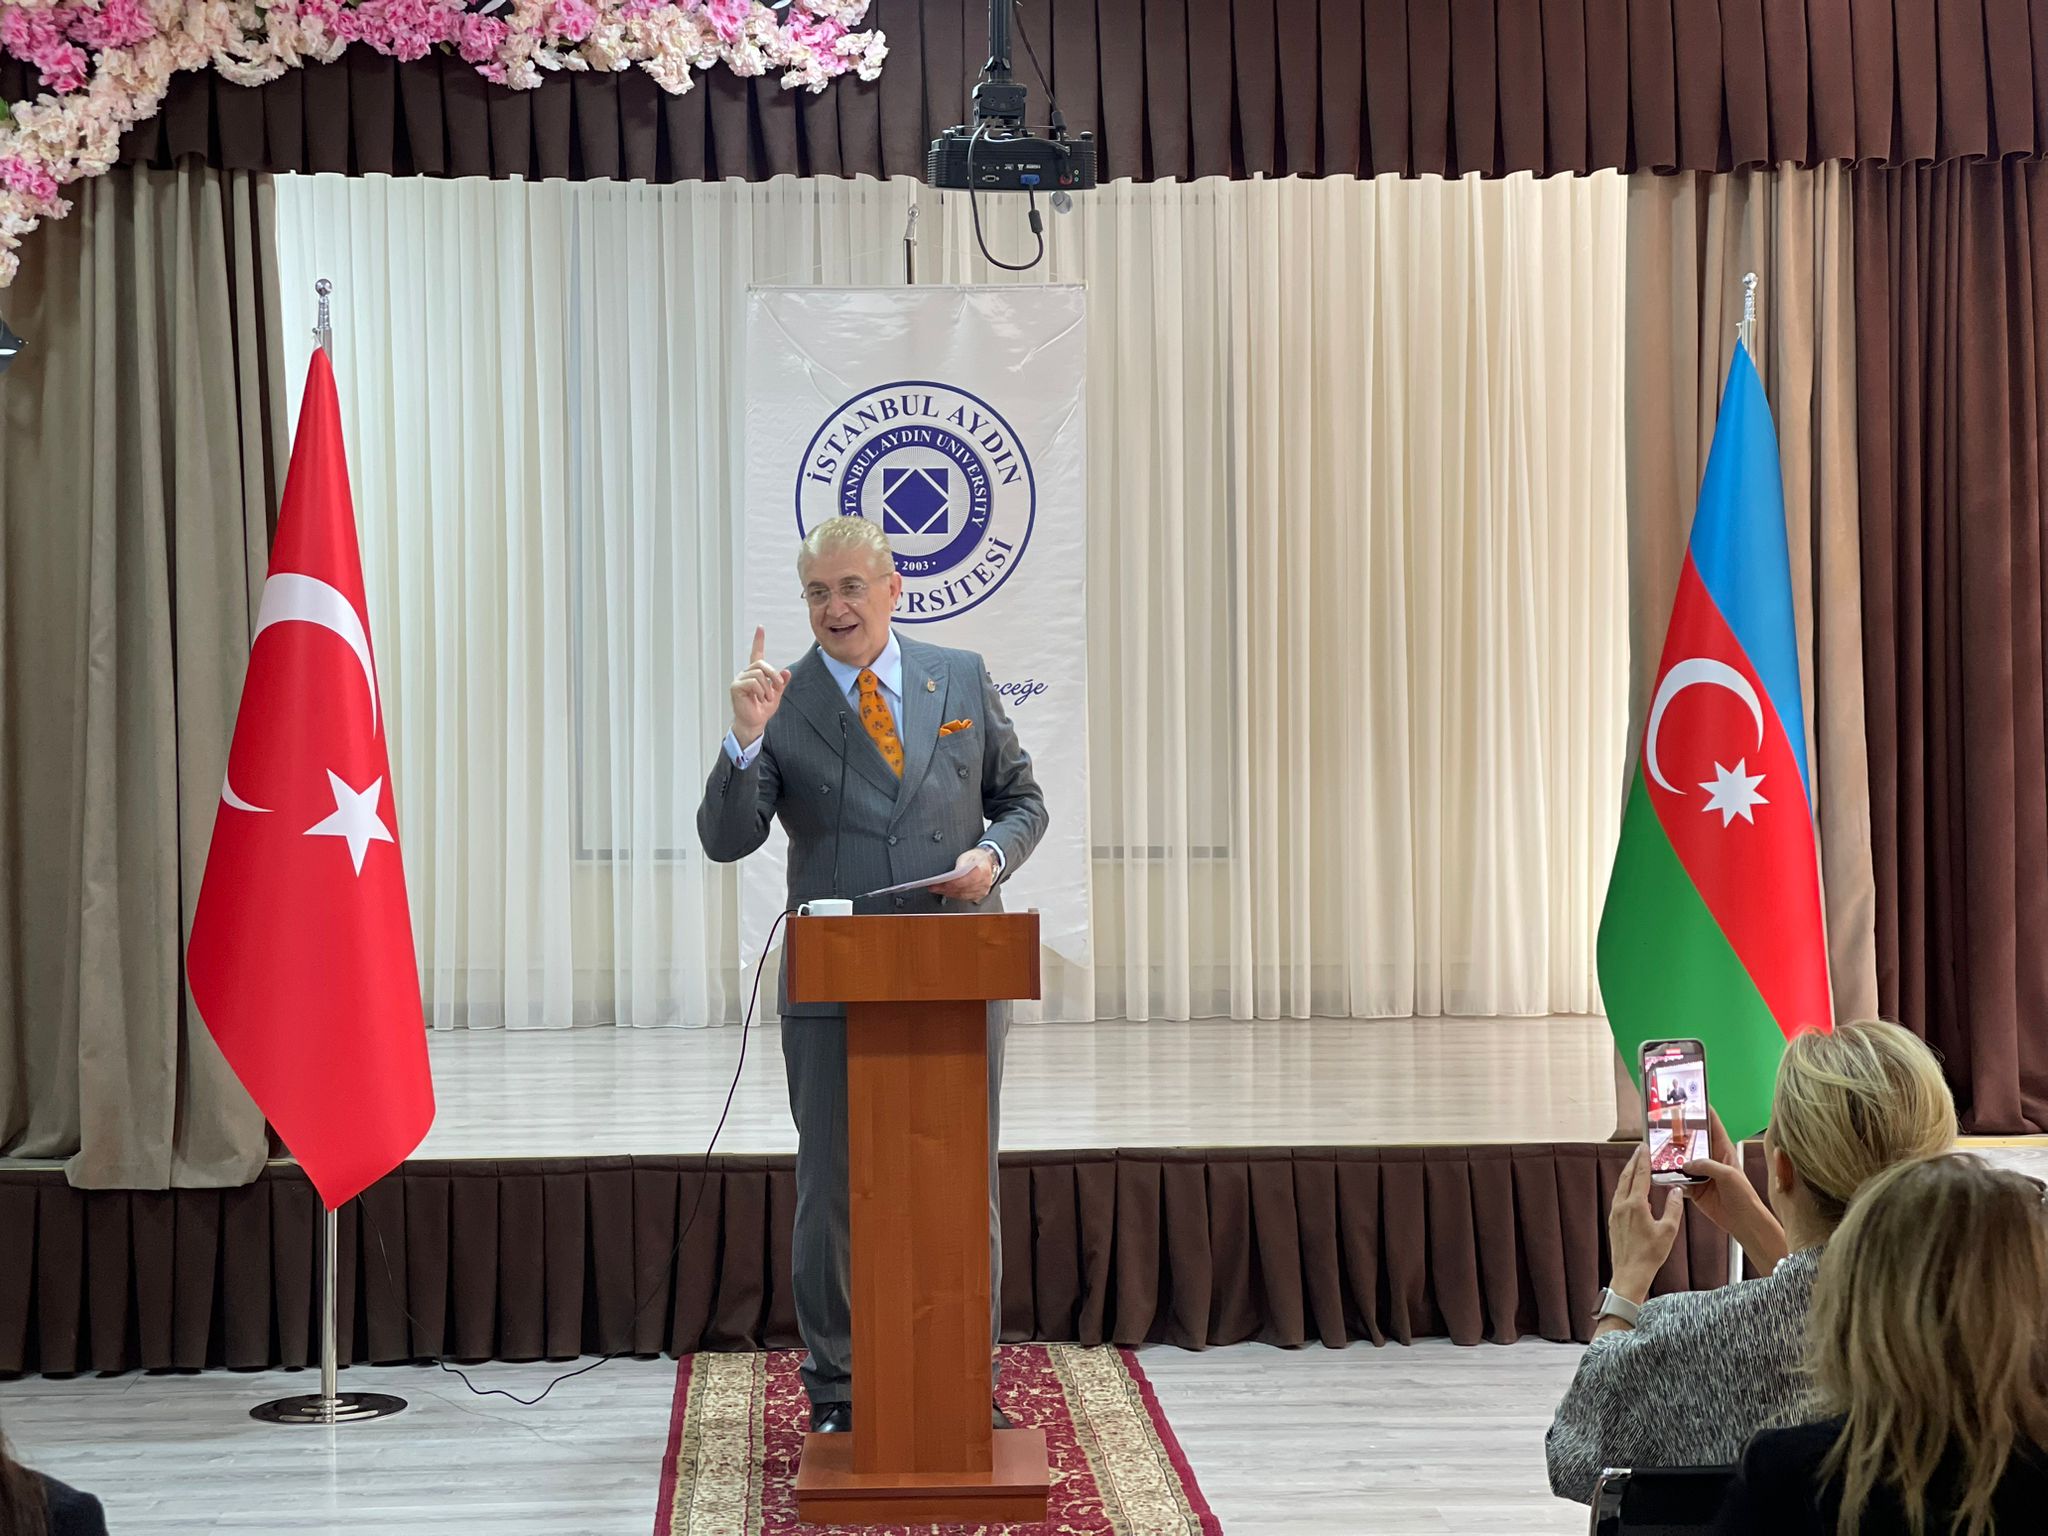 PROF. DR. MUSTAFA AYDIN’IN AZERBAYCAN TEMASLARINDA 2. GÜN Öne Çıkan Görsel